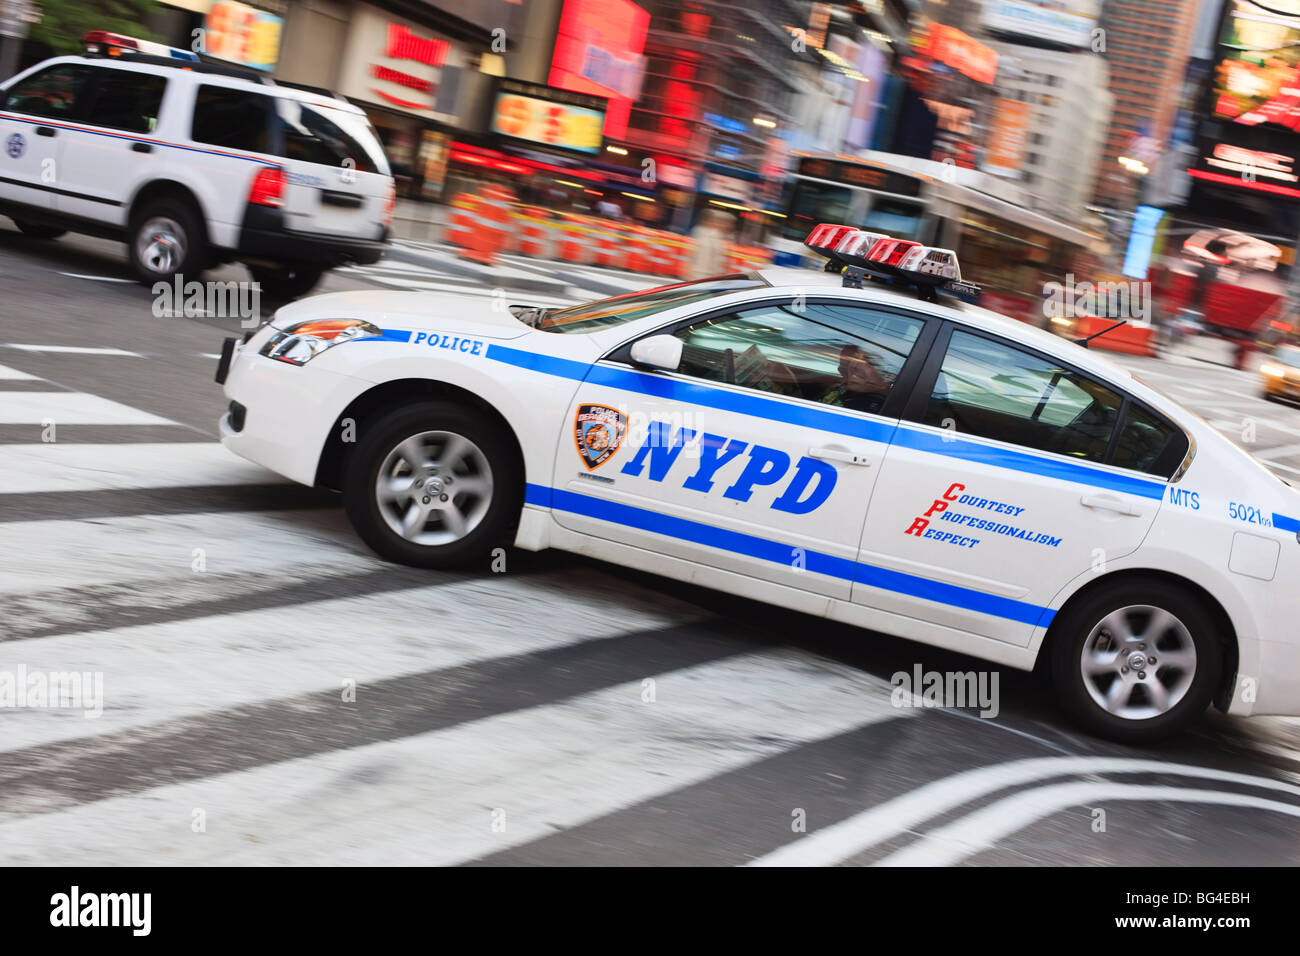 Voiture de police à Times Square, Midtown, Manhattan, New York City, New York, États-Unis d'Amérique, Amérique du Nord Banque D'Images